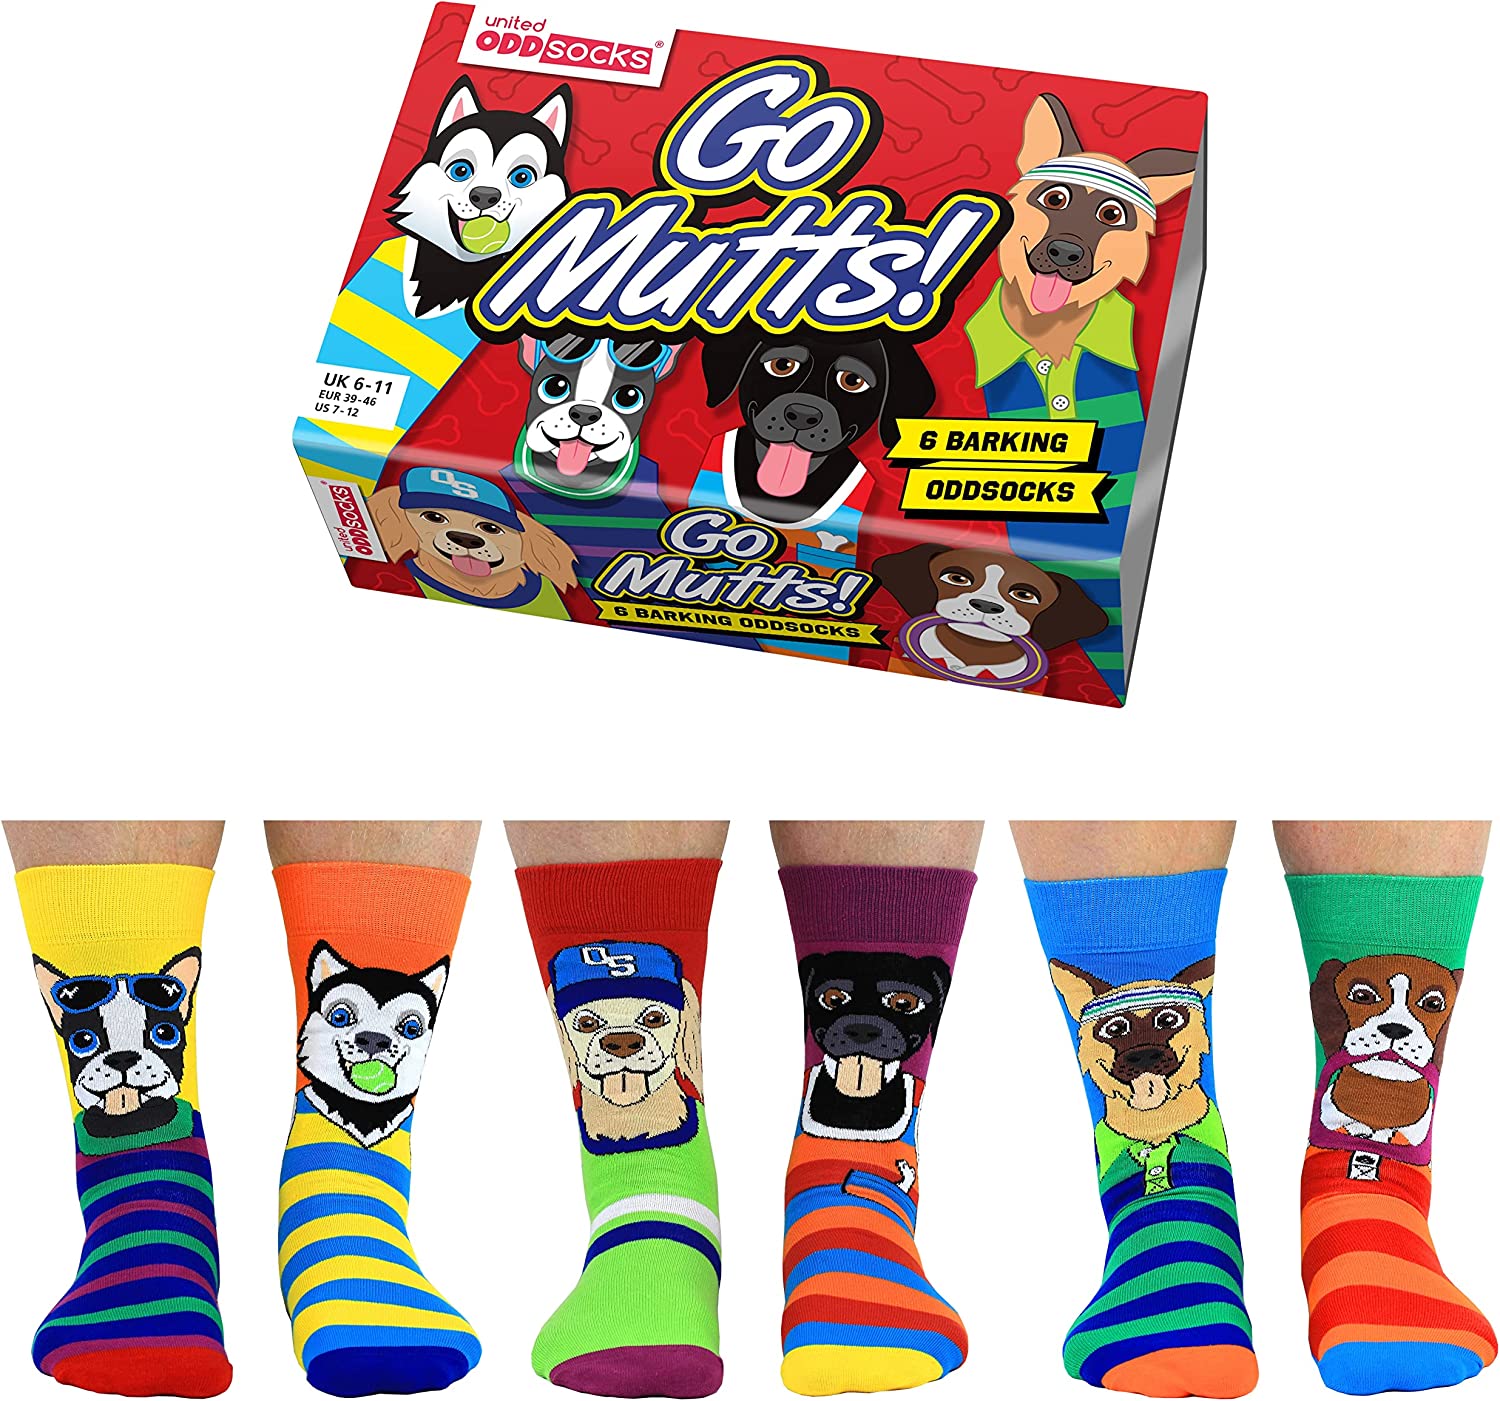 United Oddsocks Go Mutts Dog Themed Men's Socks - Size 6-11